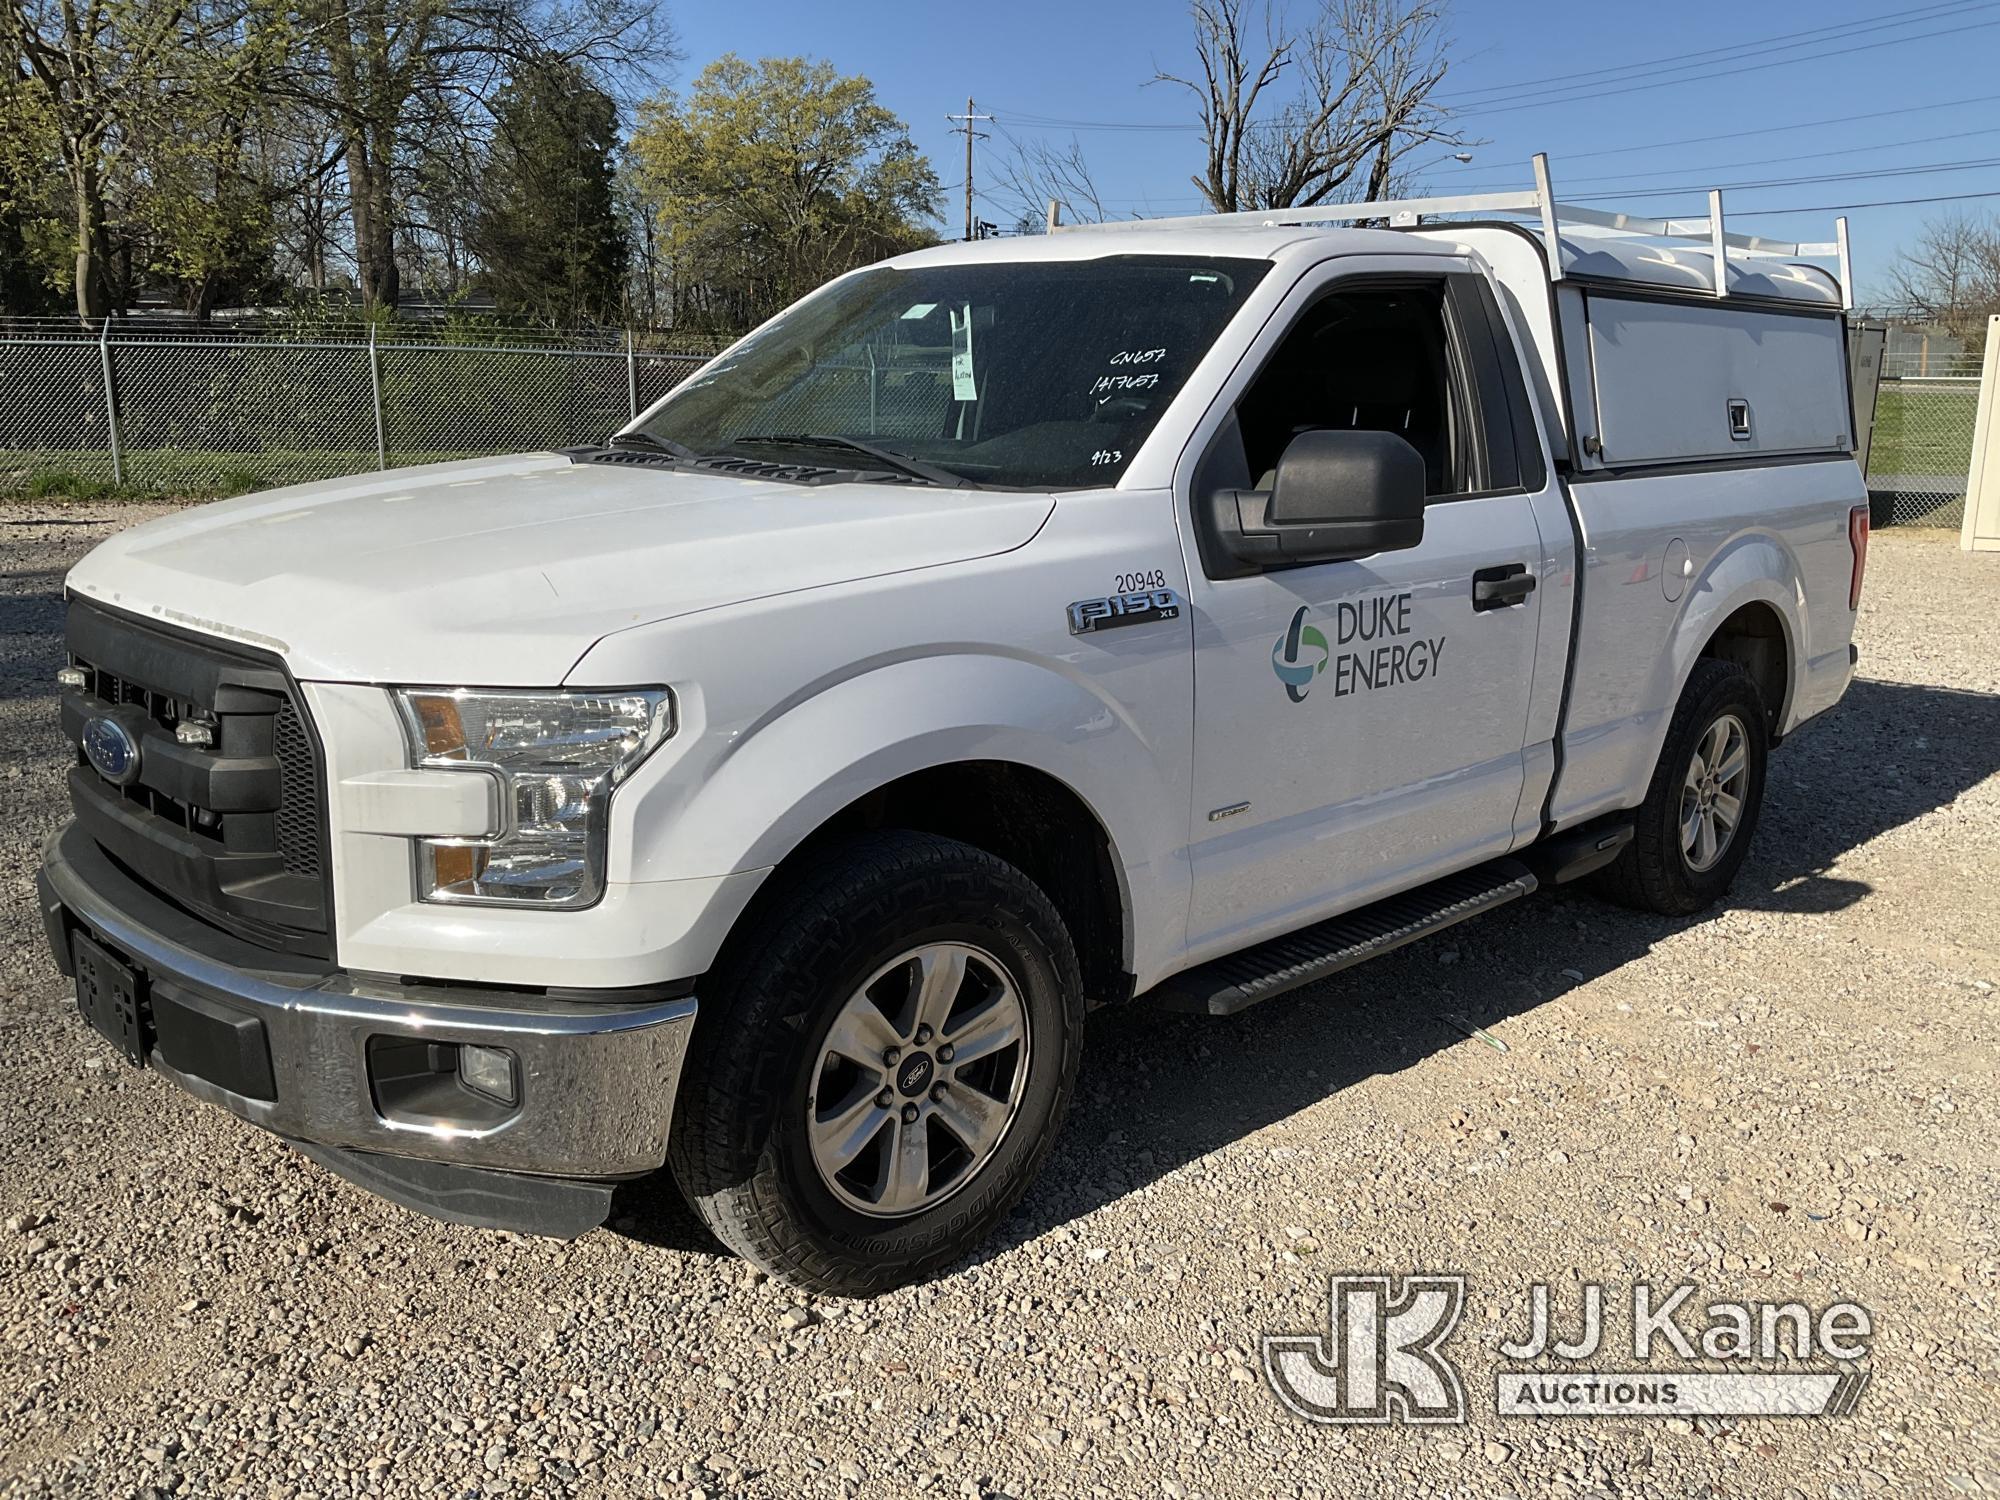 (Charlotte, NC) 2016 Ford F150 Pickup Truck Duke Unit) (Runs & Moves) (Paint Damage